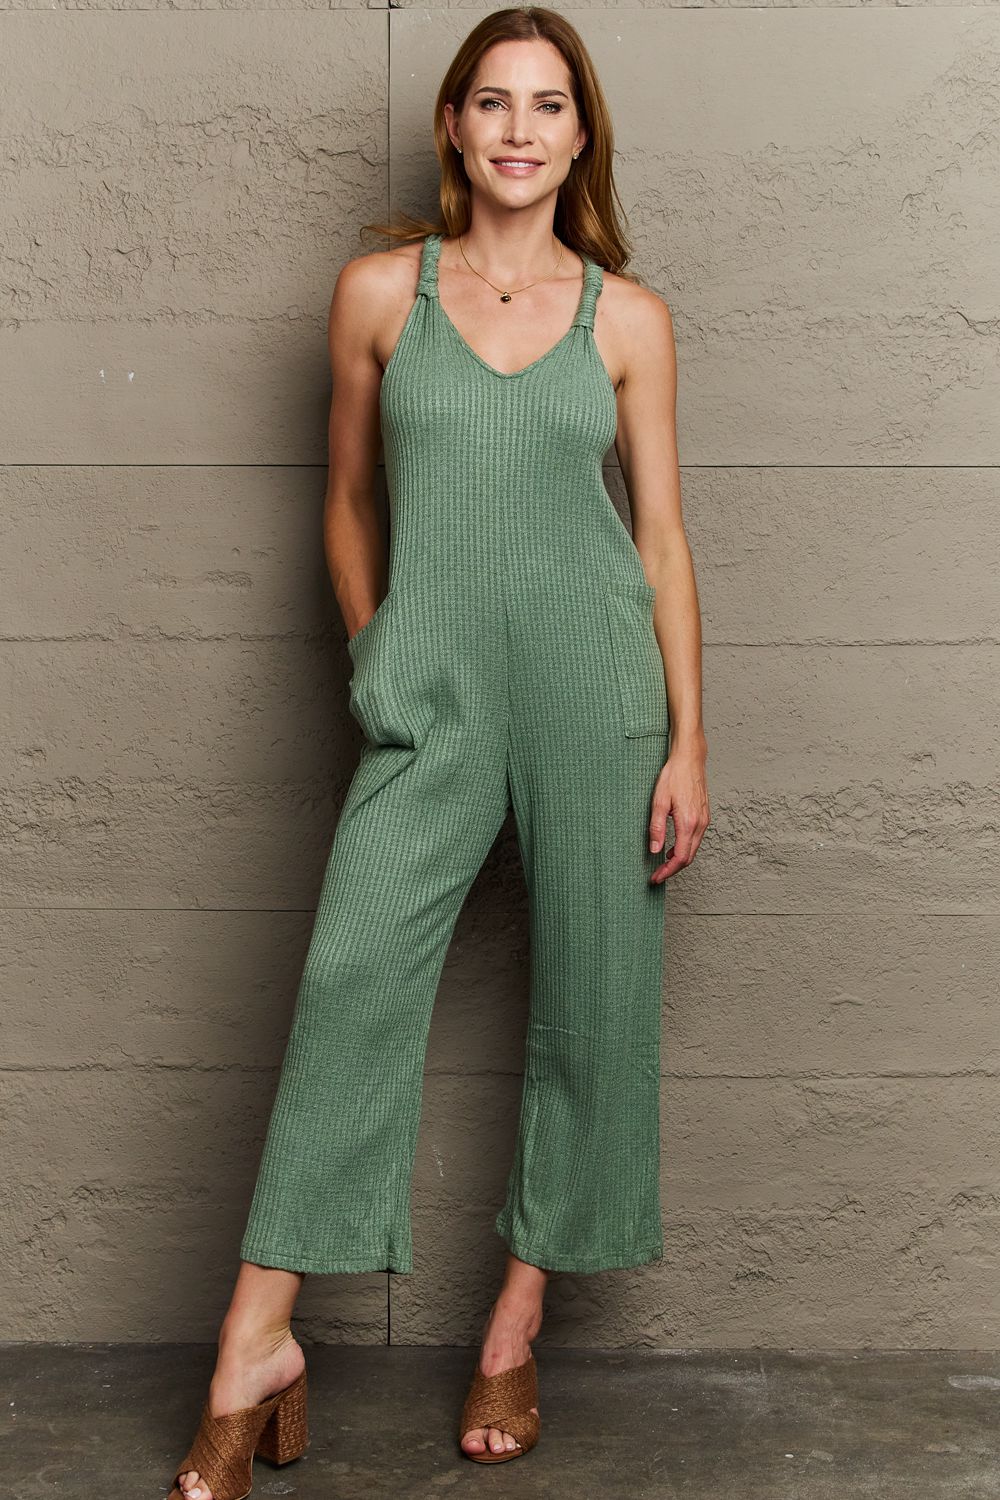 HEYSON Don't Get It Twisted Full Size Rib Knit Jumpsuit - TiffanyzKlozet